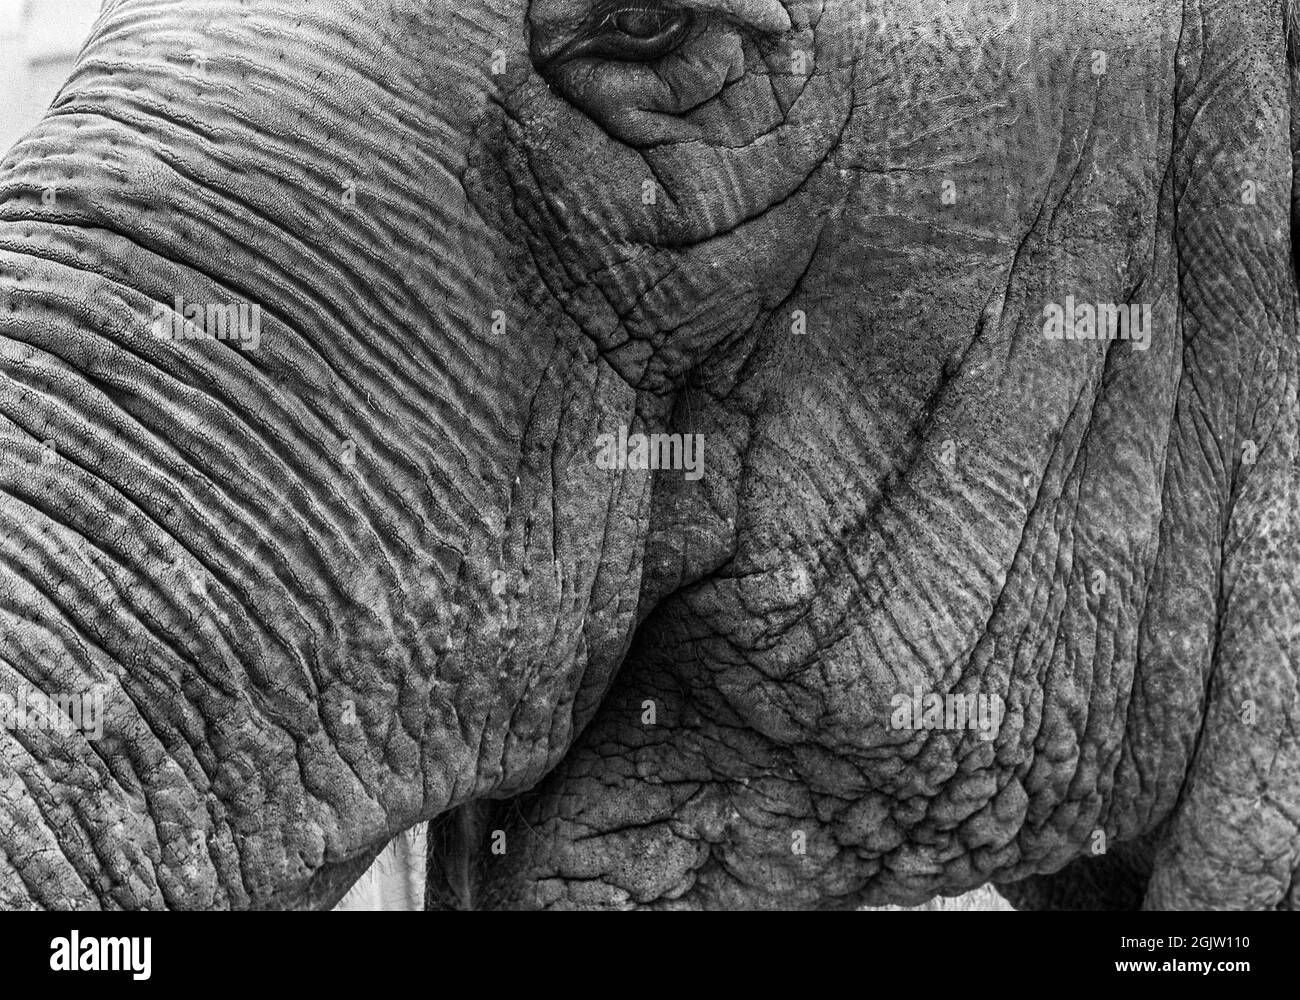 Asian elephant, head detail. Stock Photo